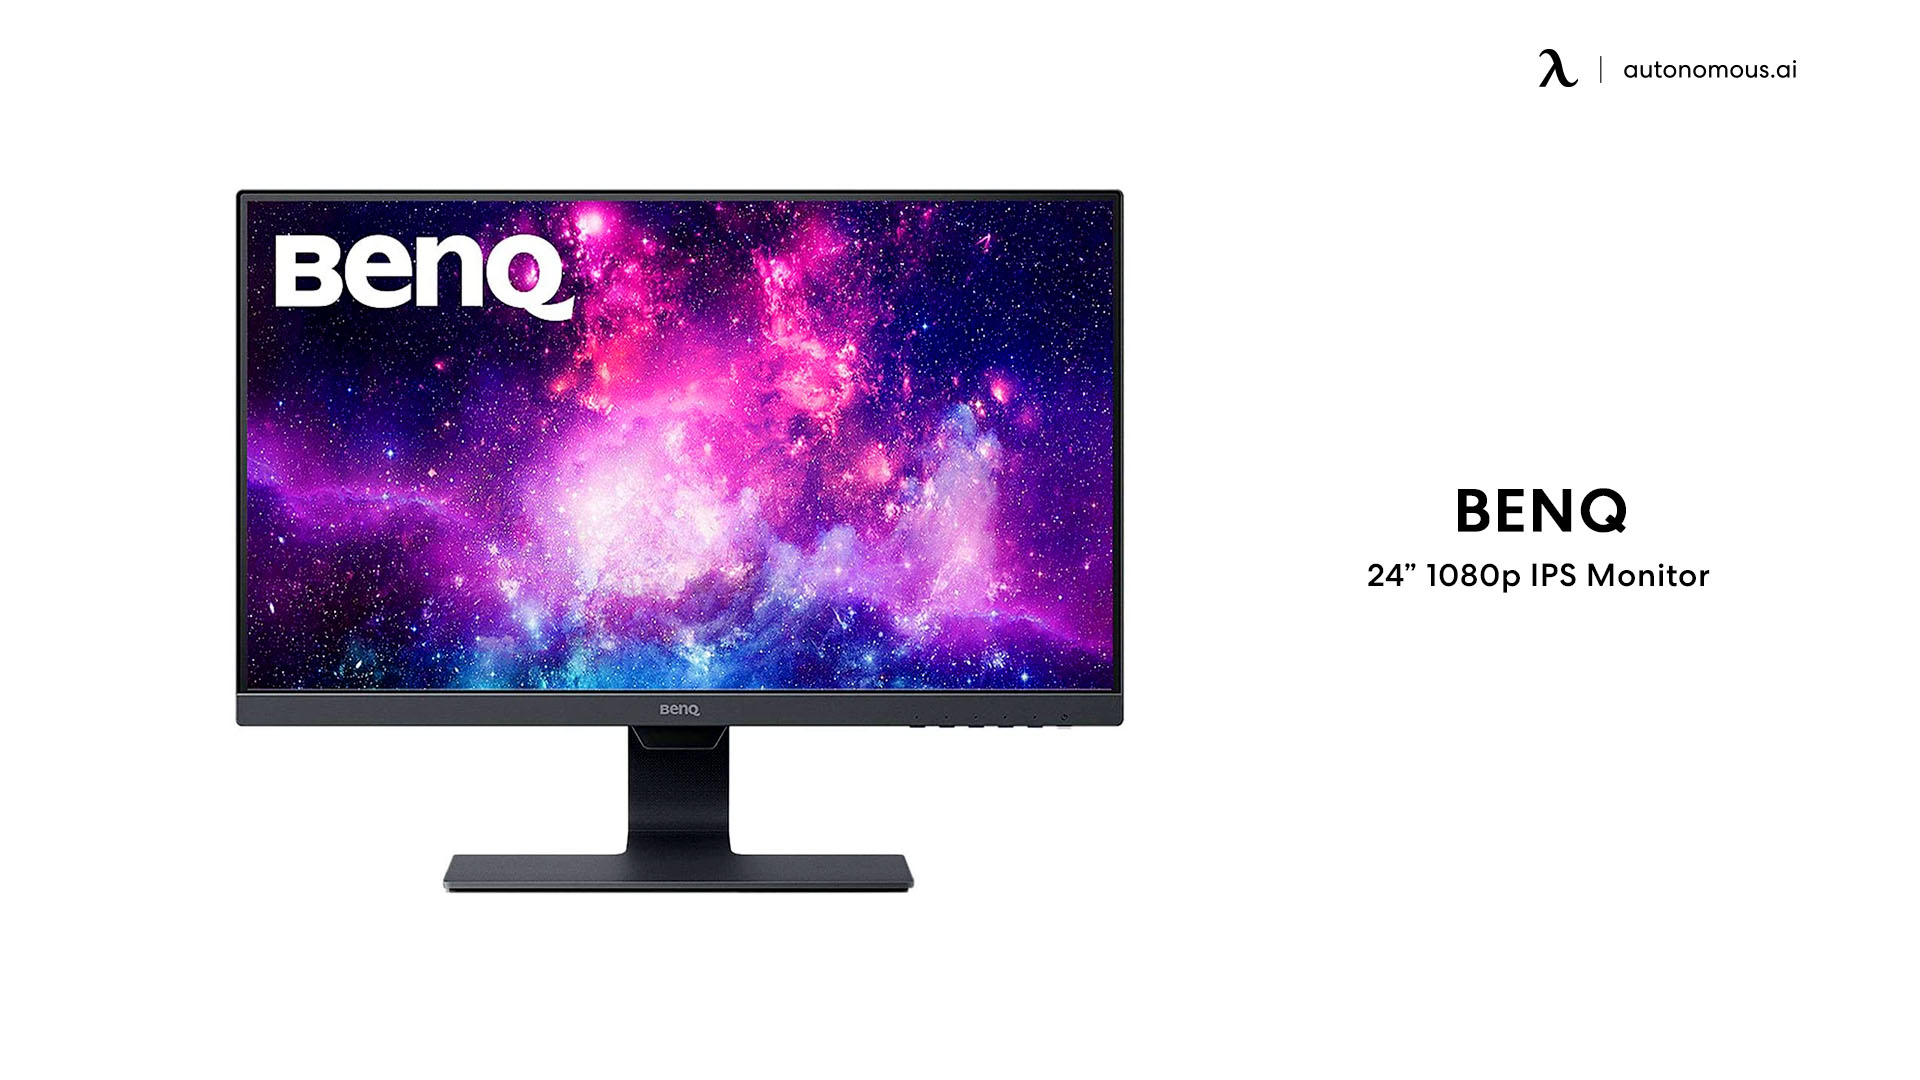 BenQ 24” 1080p IPS Monitor